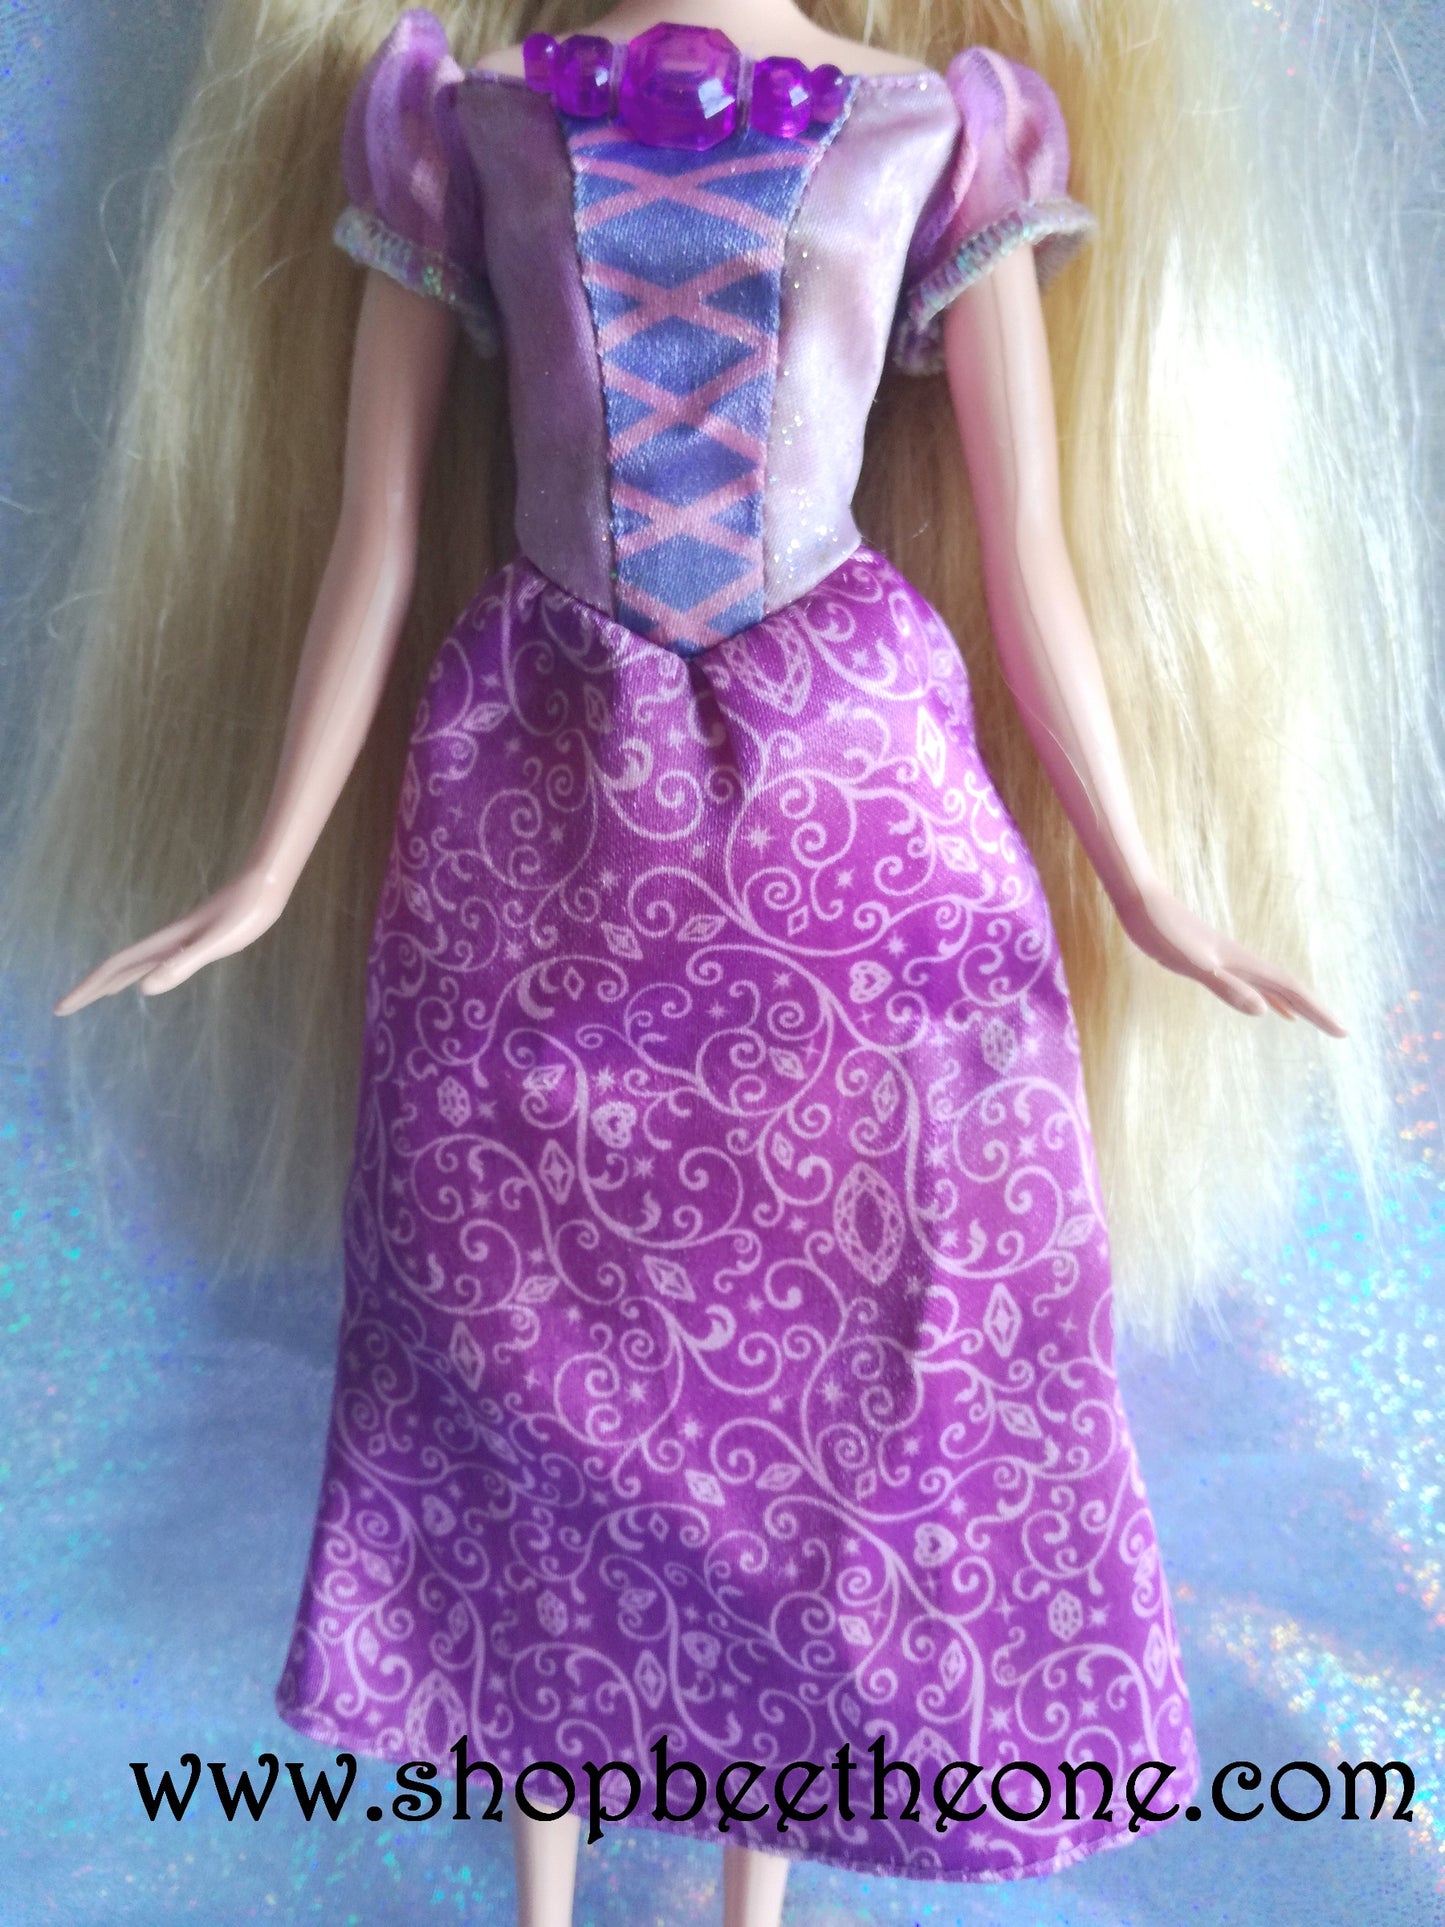 Raiponce Disney Princess Collection - Exclusivité USA - Mattel 2015 - Poupée - Vêtement